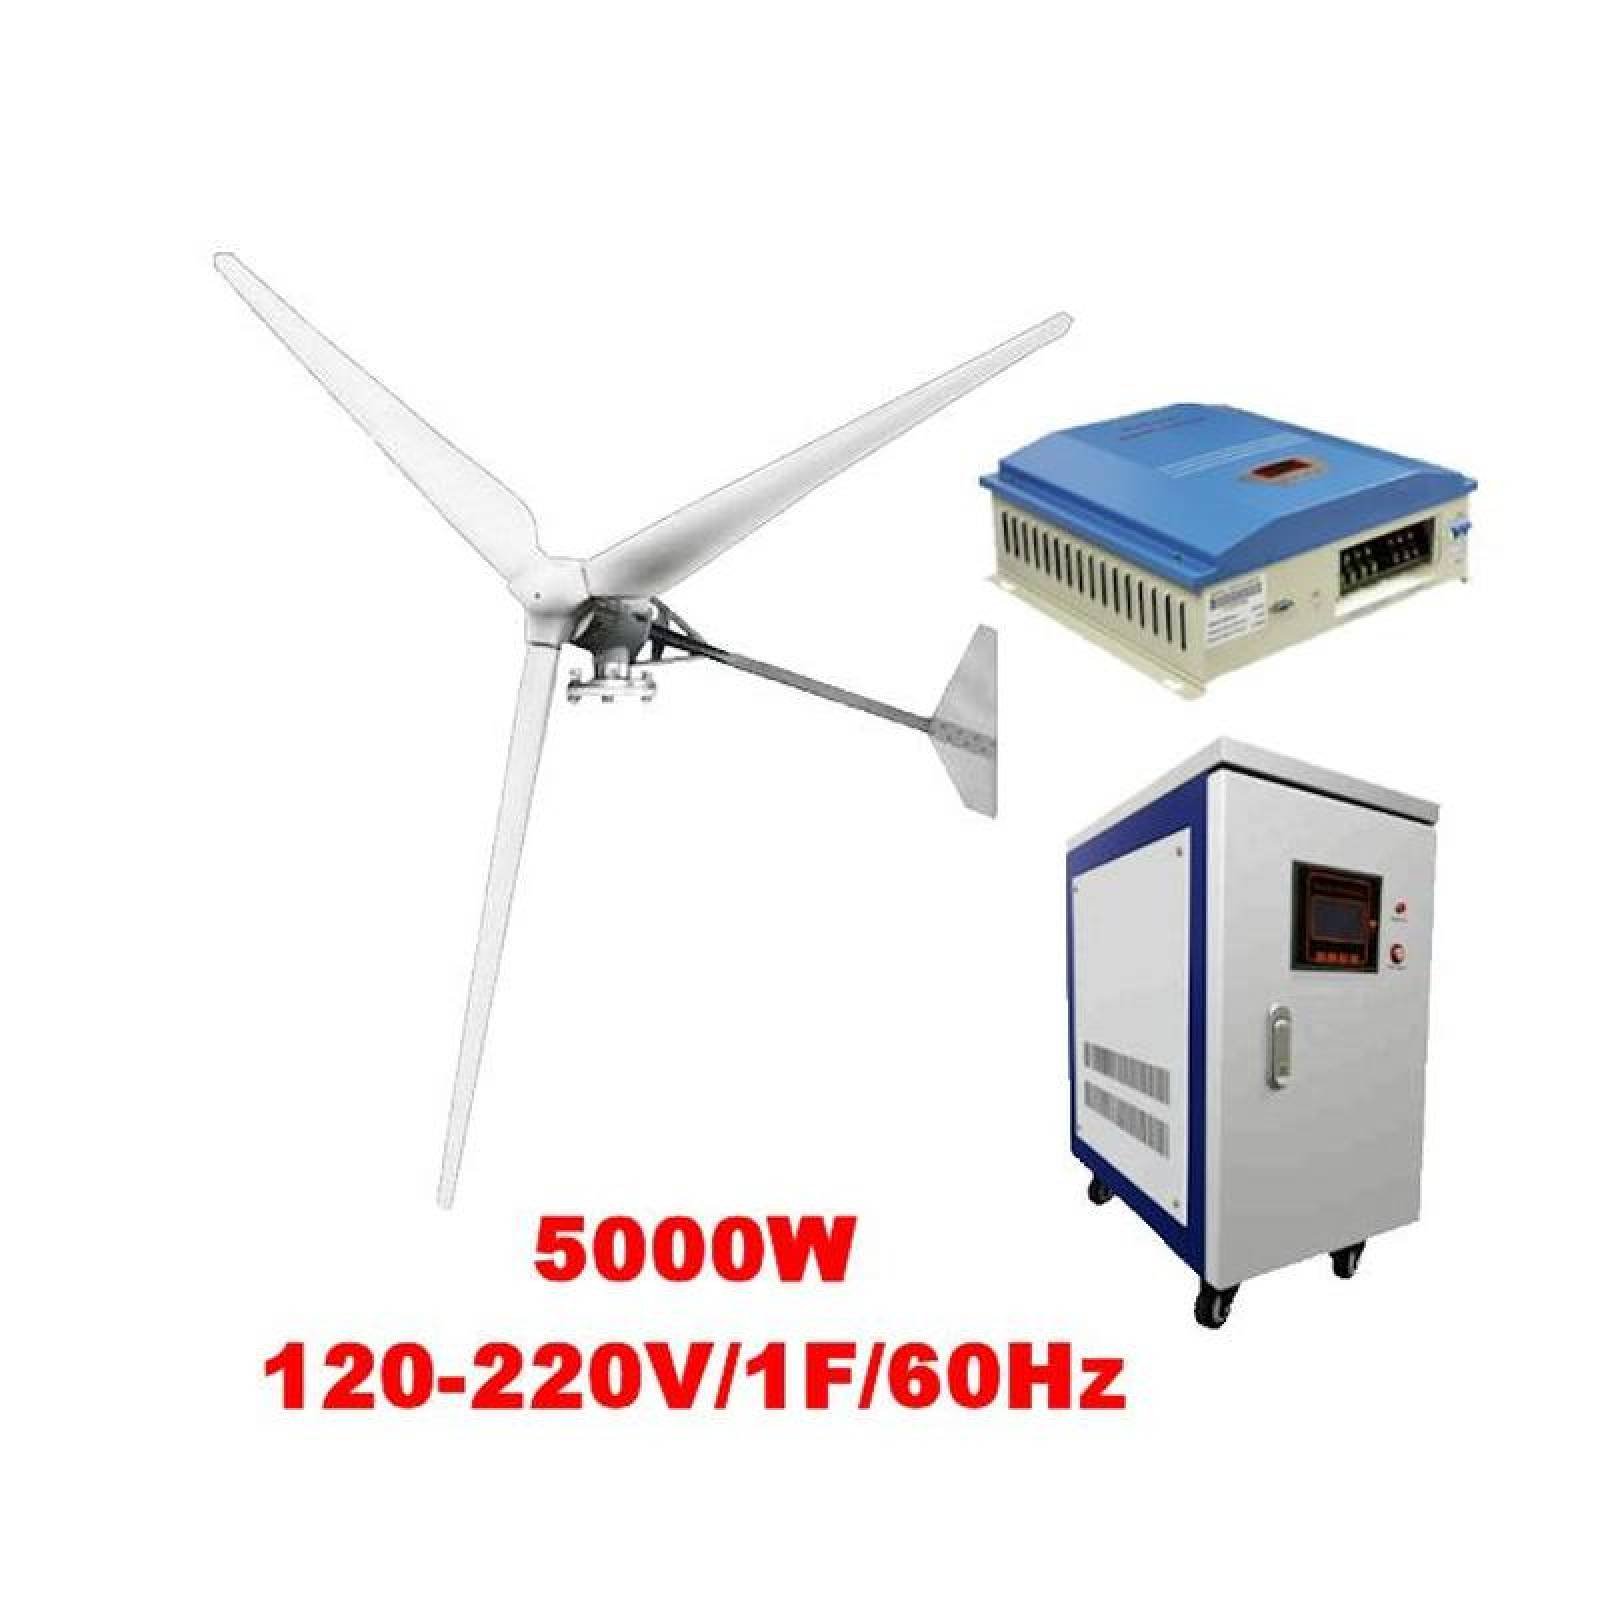 Kit Generador Eólico Horizontal, MXFLT-001-1, Generador 5000W, 120V,  Vientos de 3 a 45m/s